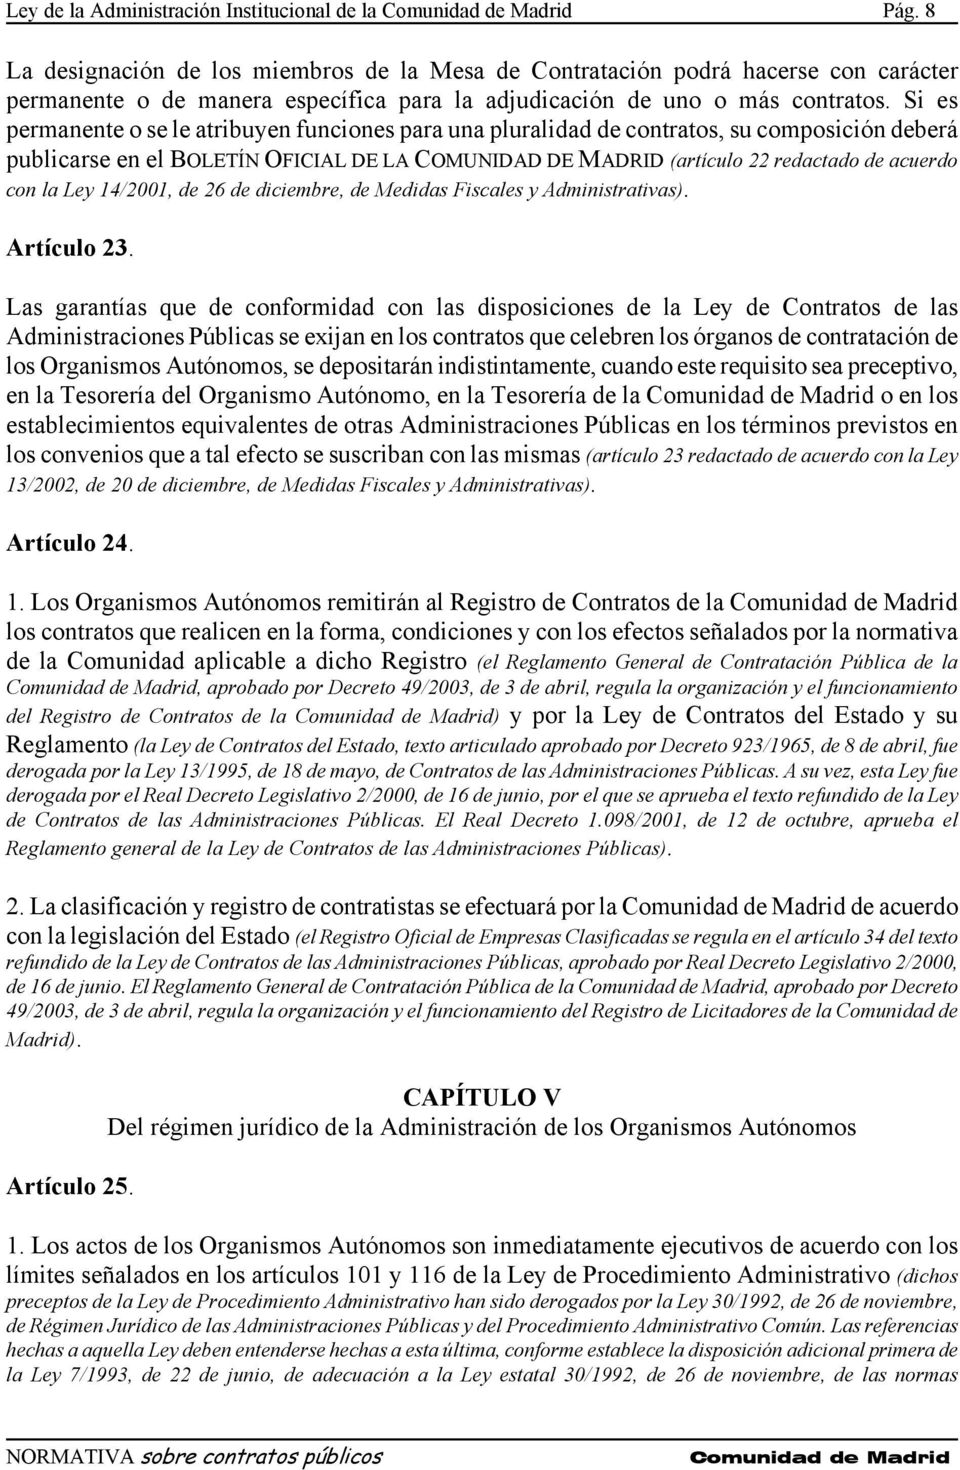 Si es permanente o se le atribuyen funciones para una pluralidad de contratos, su composición deberá publicarse en el BOLETÍN OFICIAL DE LA COMUNIDAD DE MADRID (artículo 22 redactado de acuerdo con